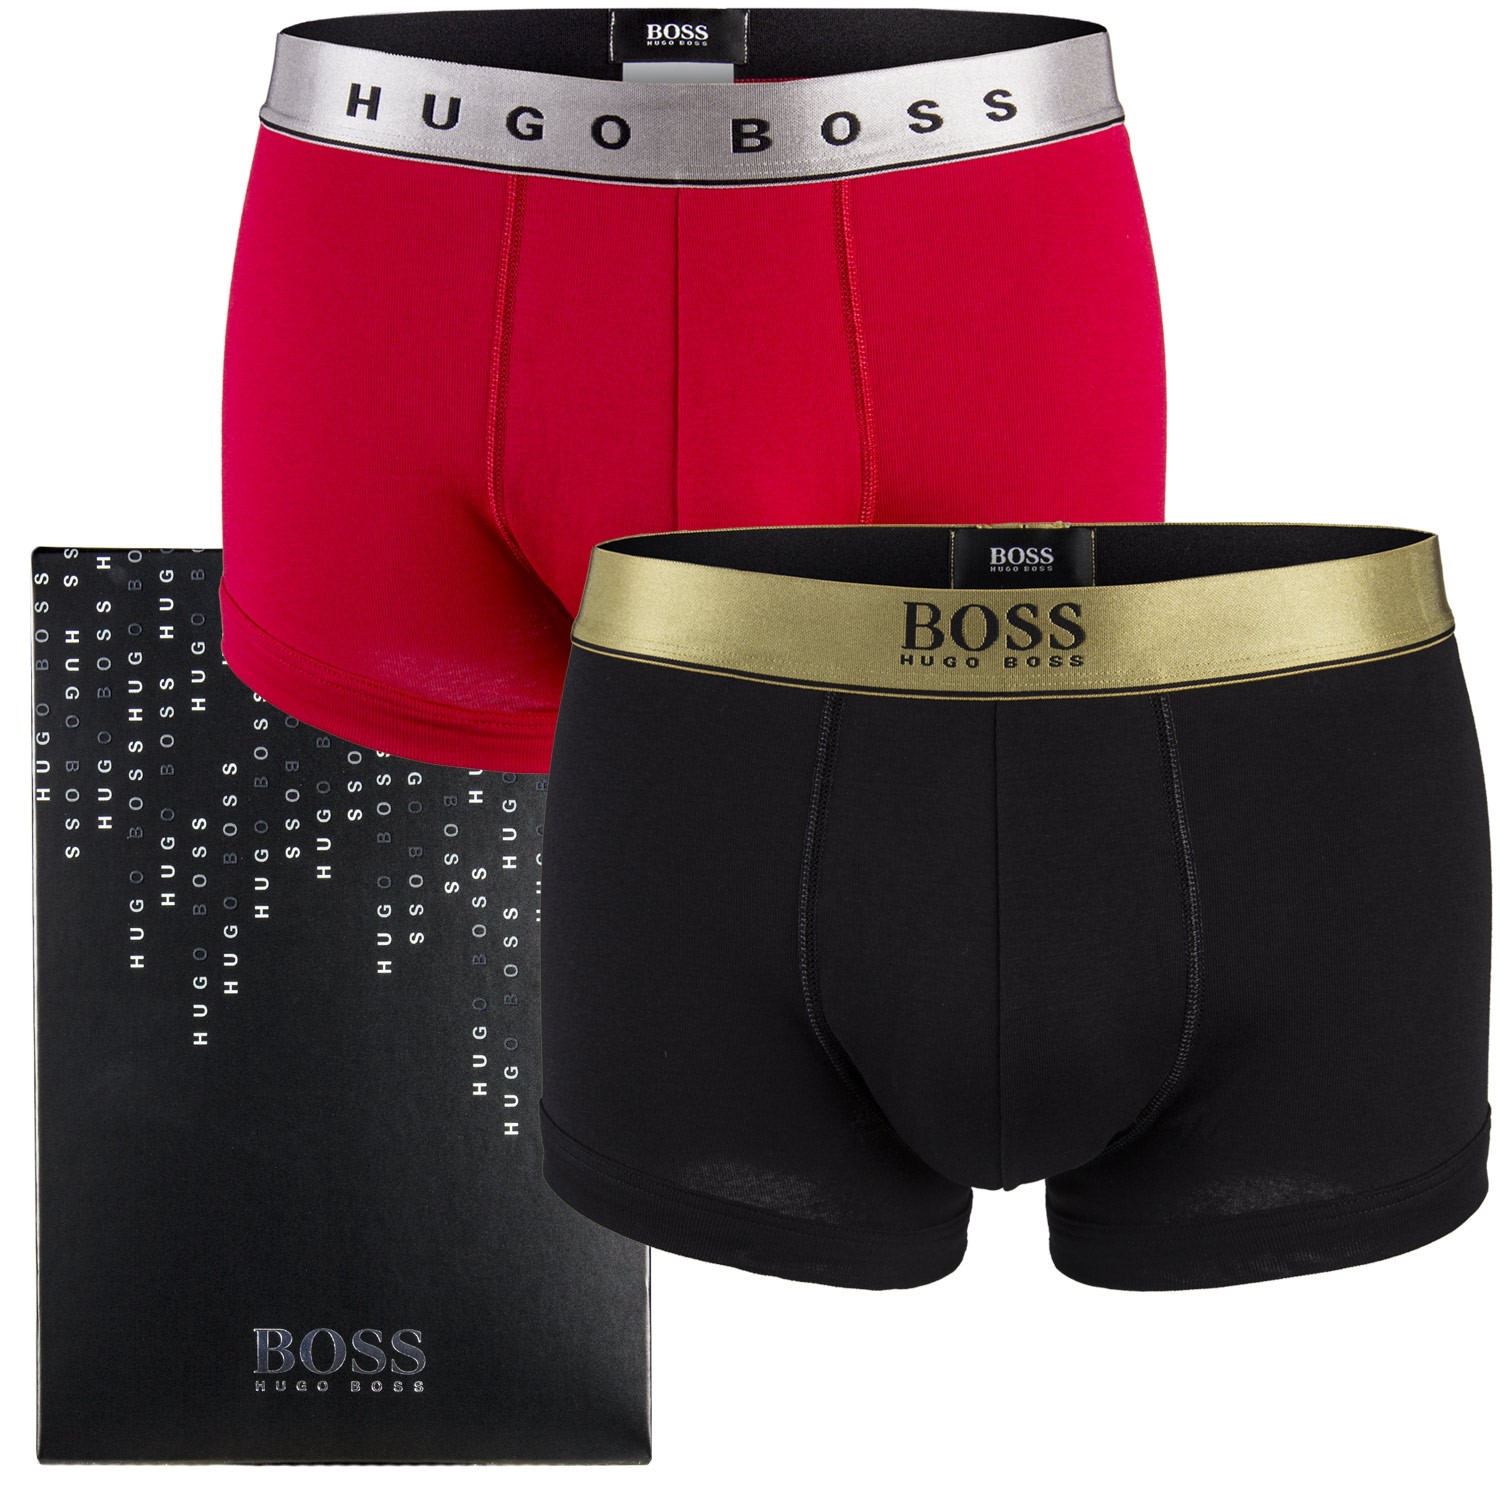 hugo boss trunks